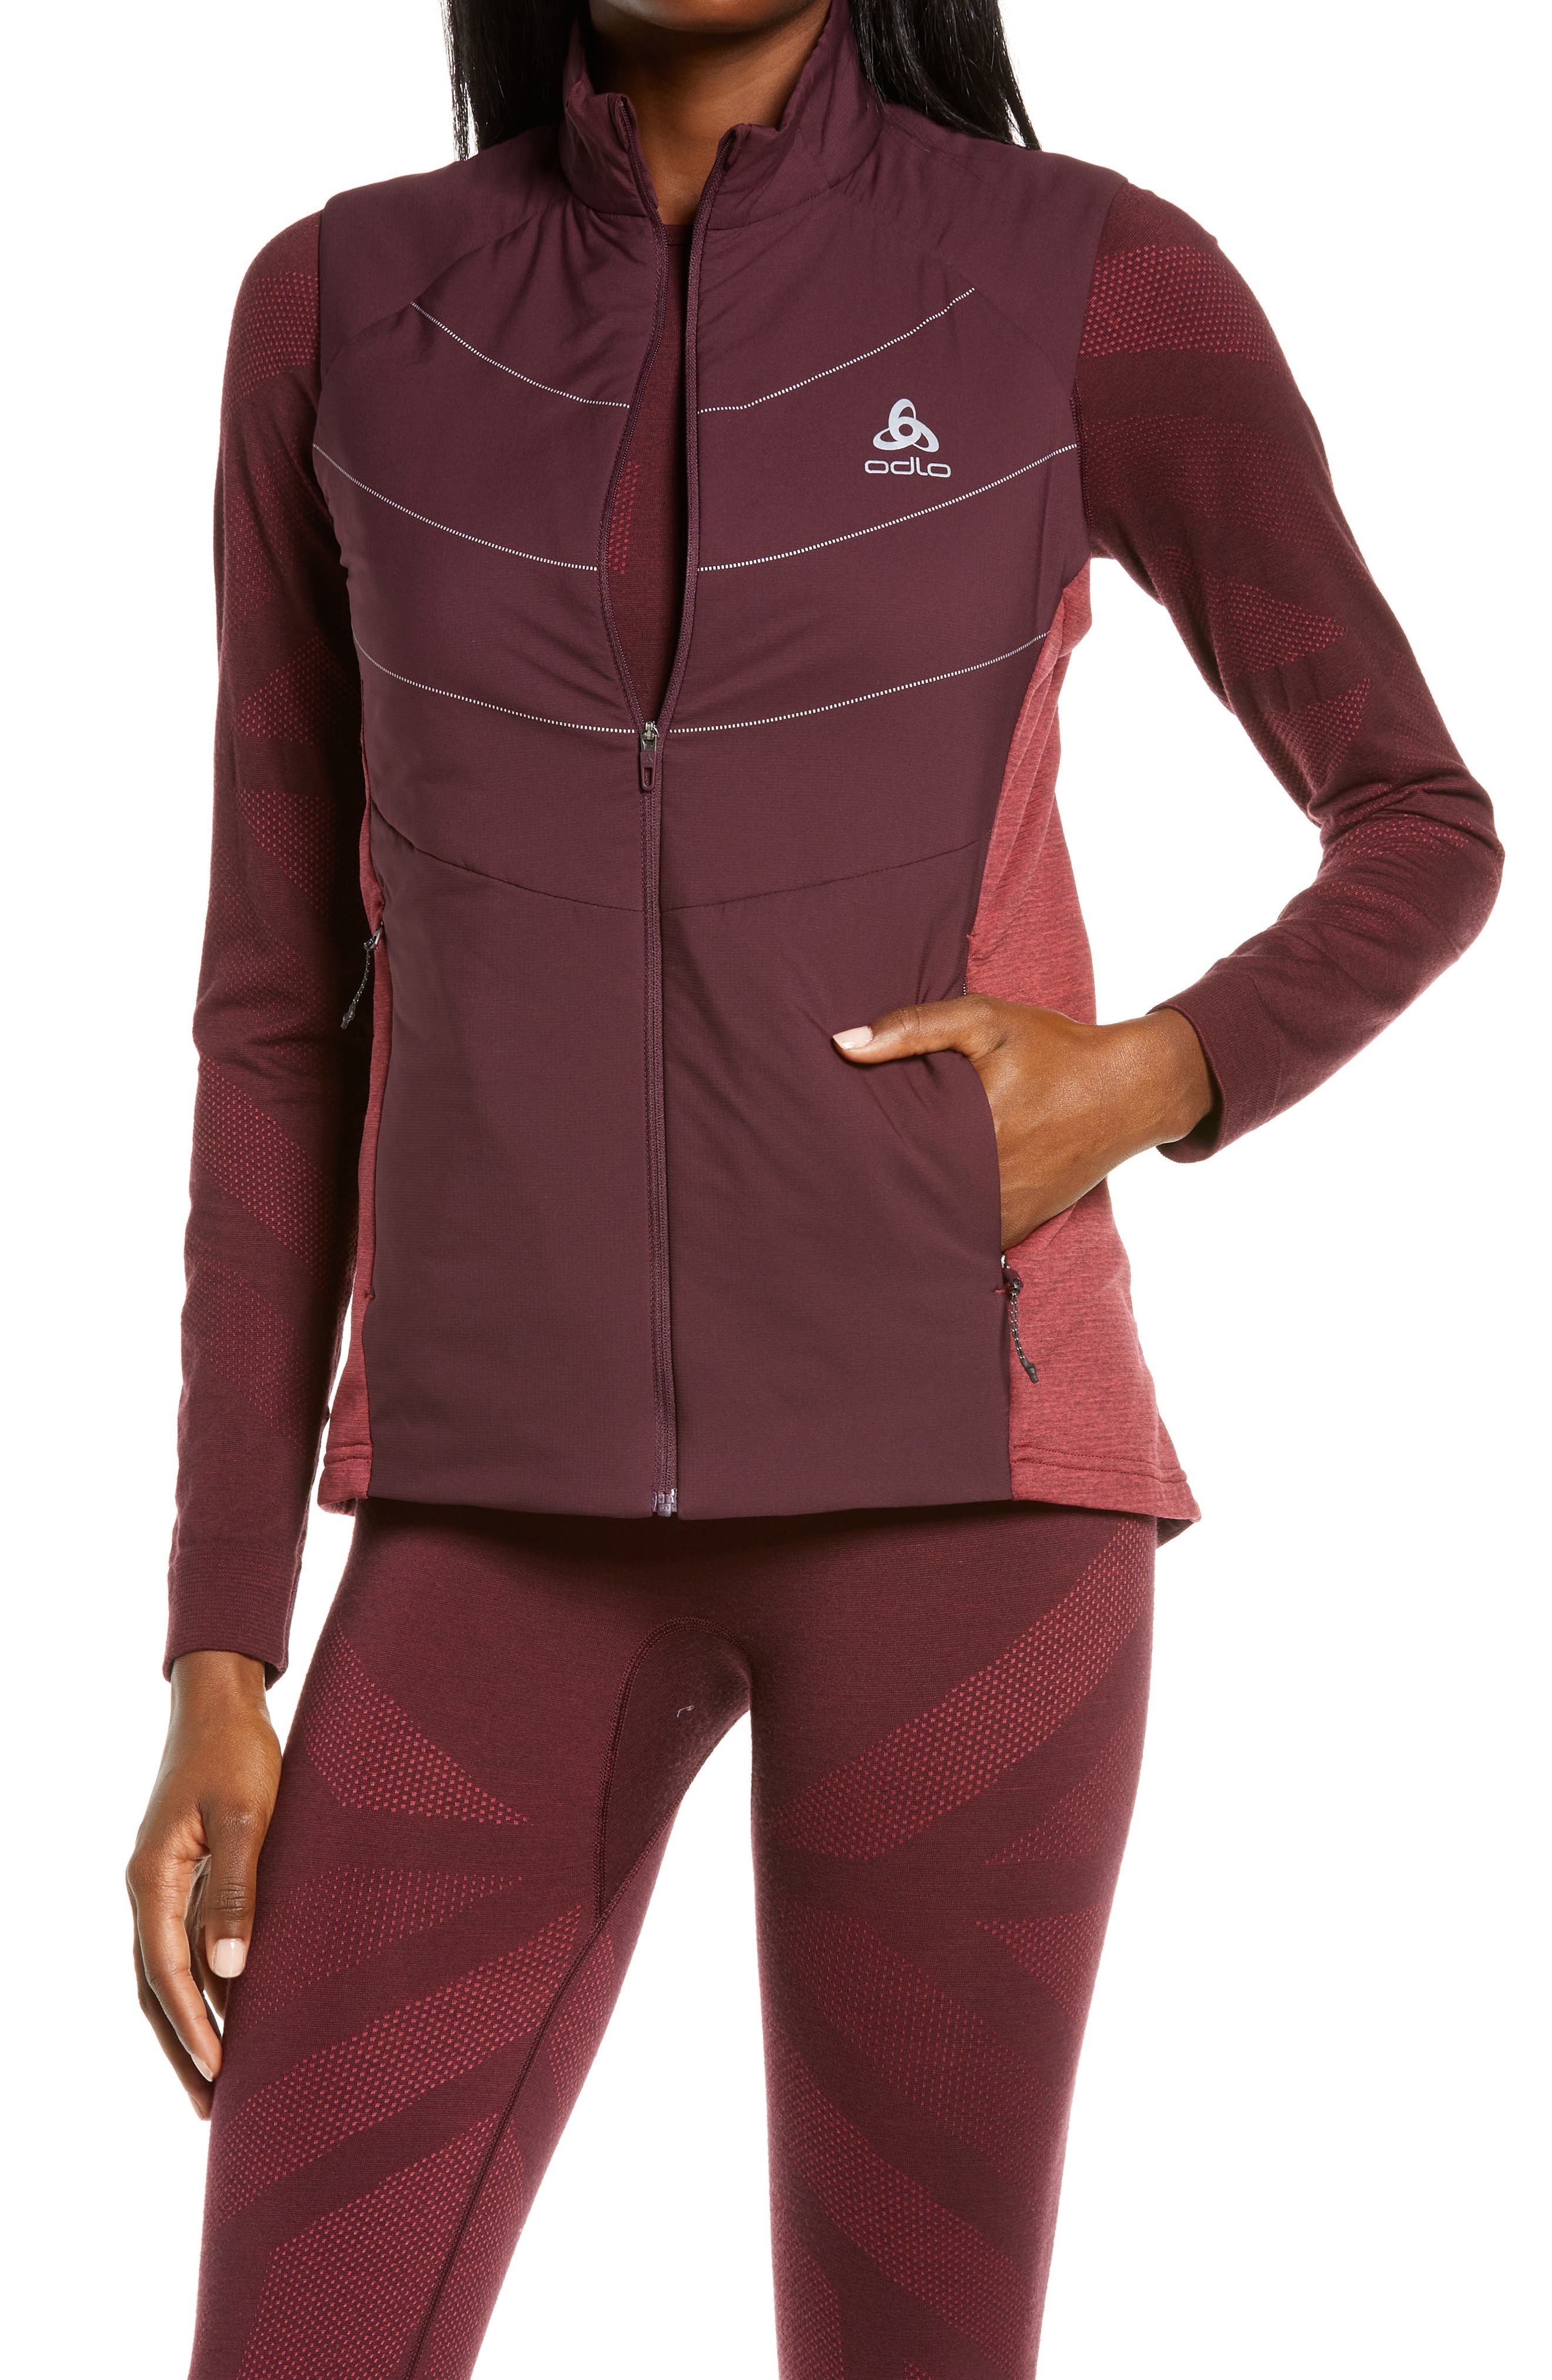 ODLO Fleece Jacket Ladies Womens Outdoor Active Sports Long Sleeve Jersey Zip